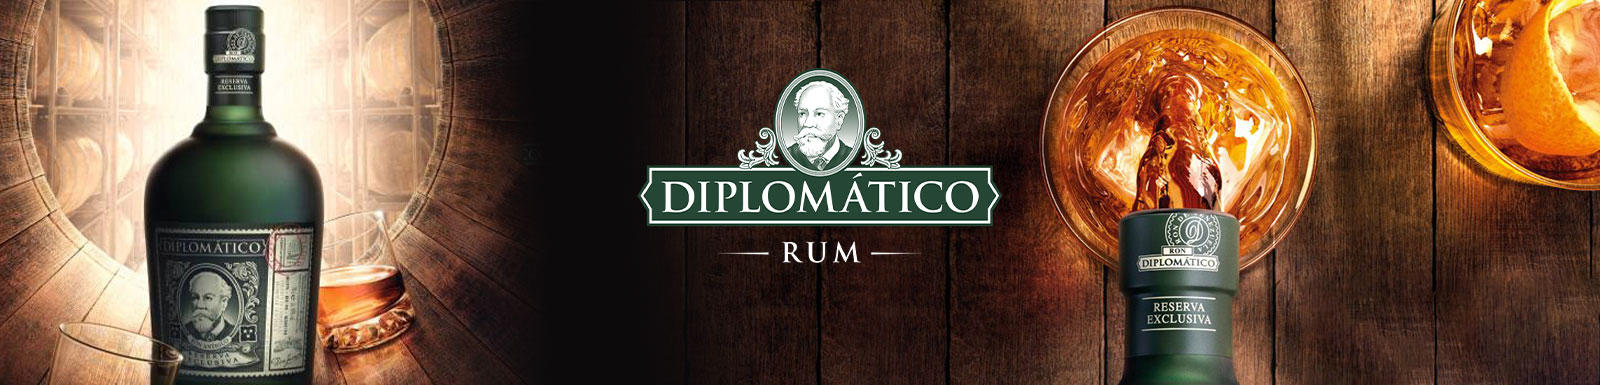 rum diplomatico reserva exclusiva